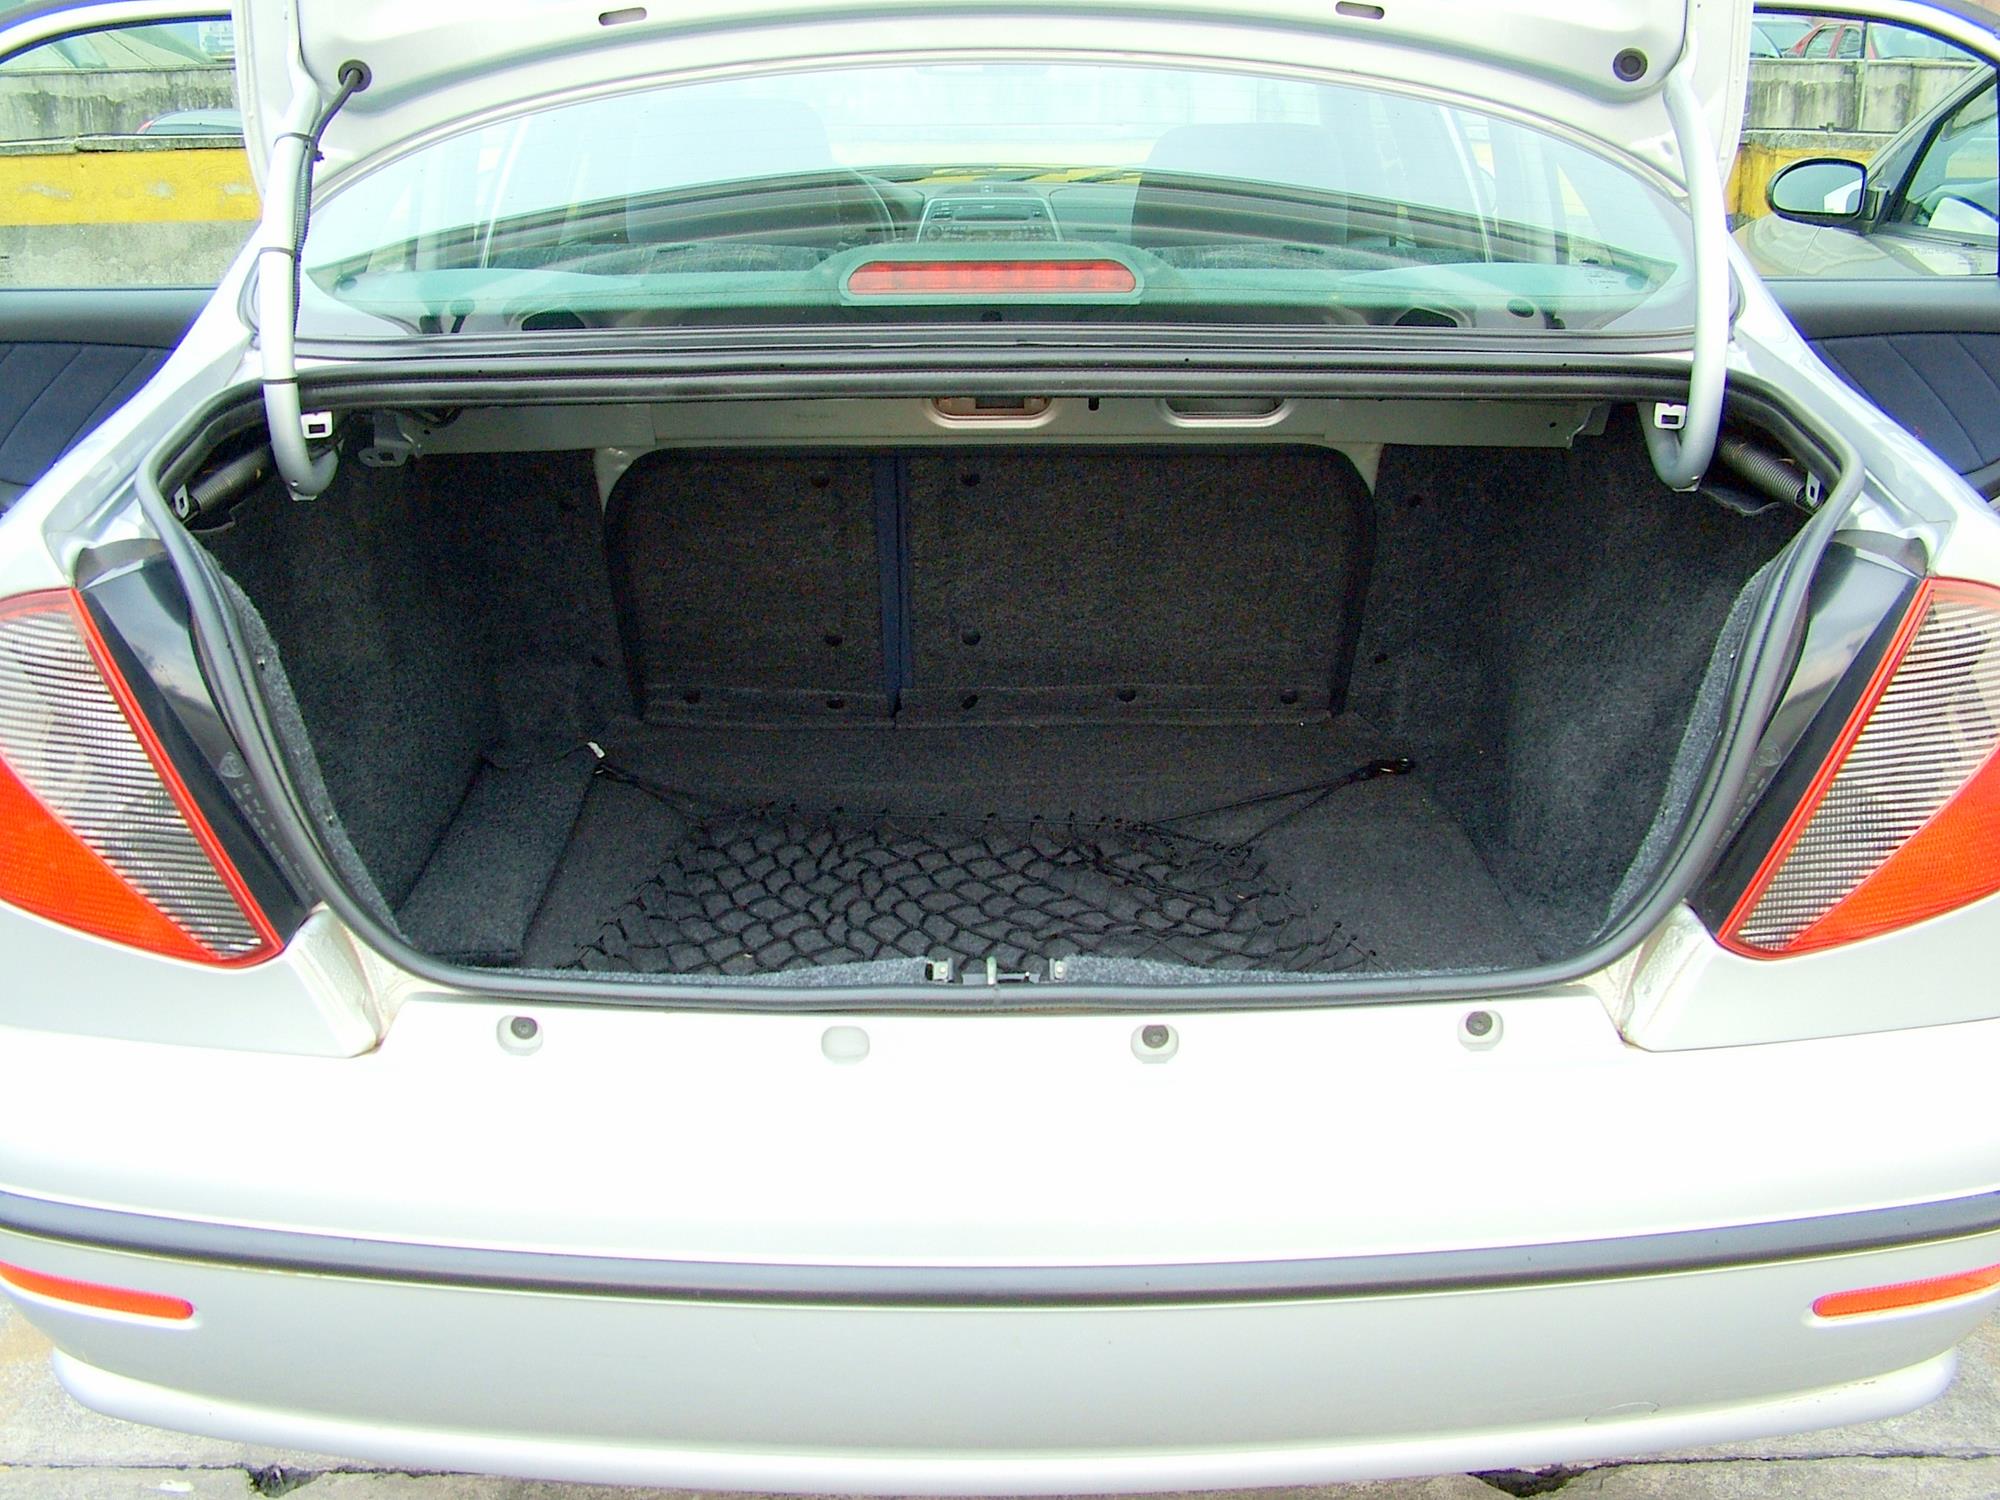 Porta-malas do Marea SX 1.6 da Fiat, sedã modelo 2006, testado pela revista Quat